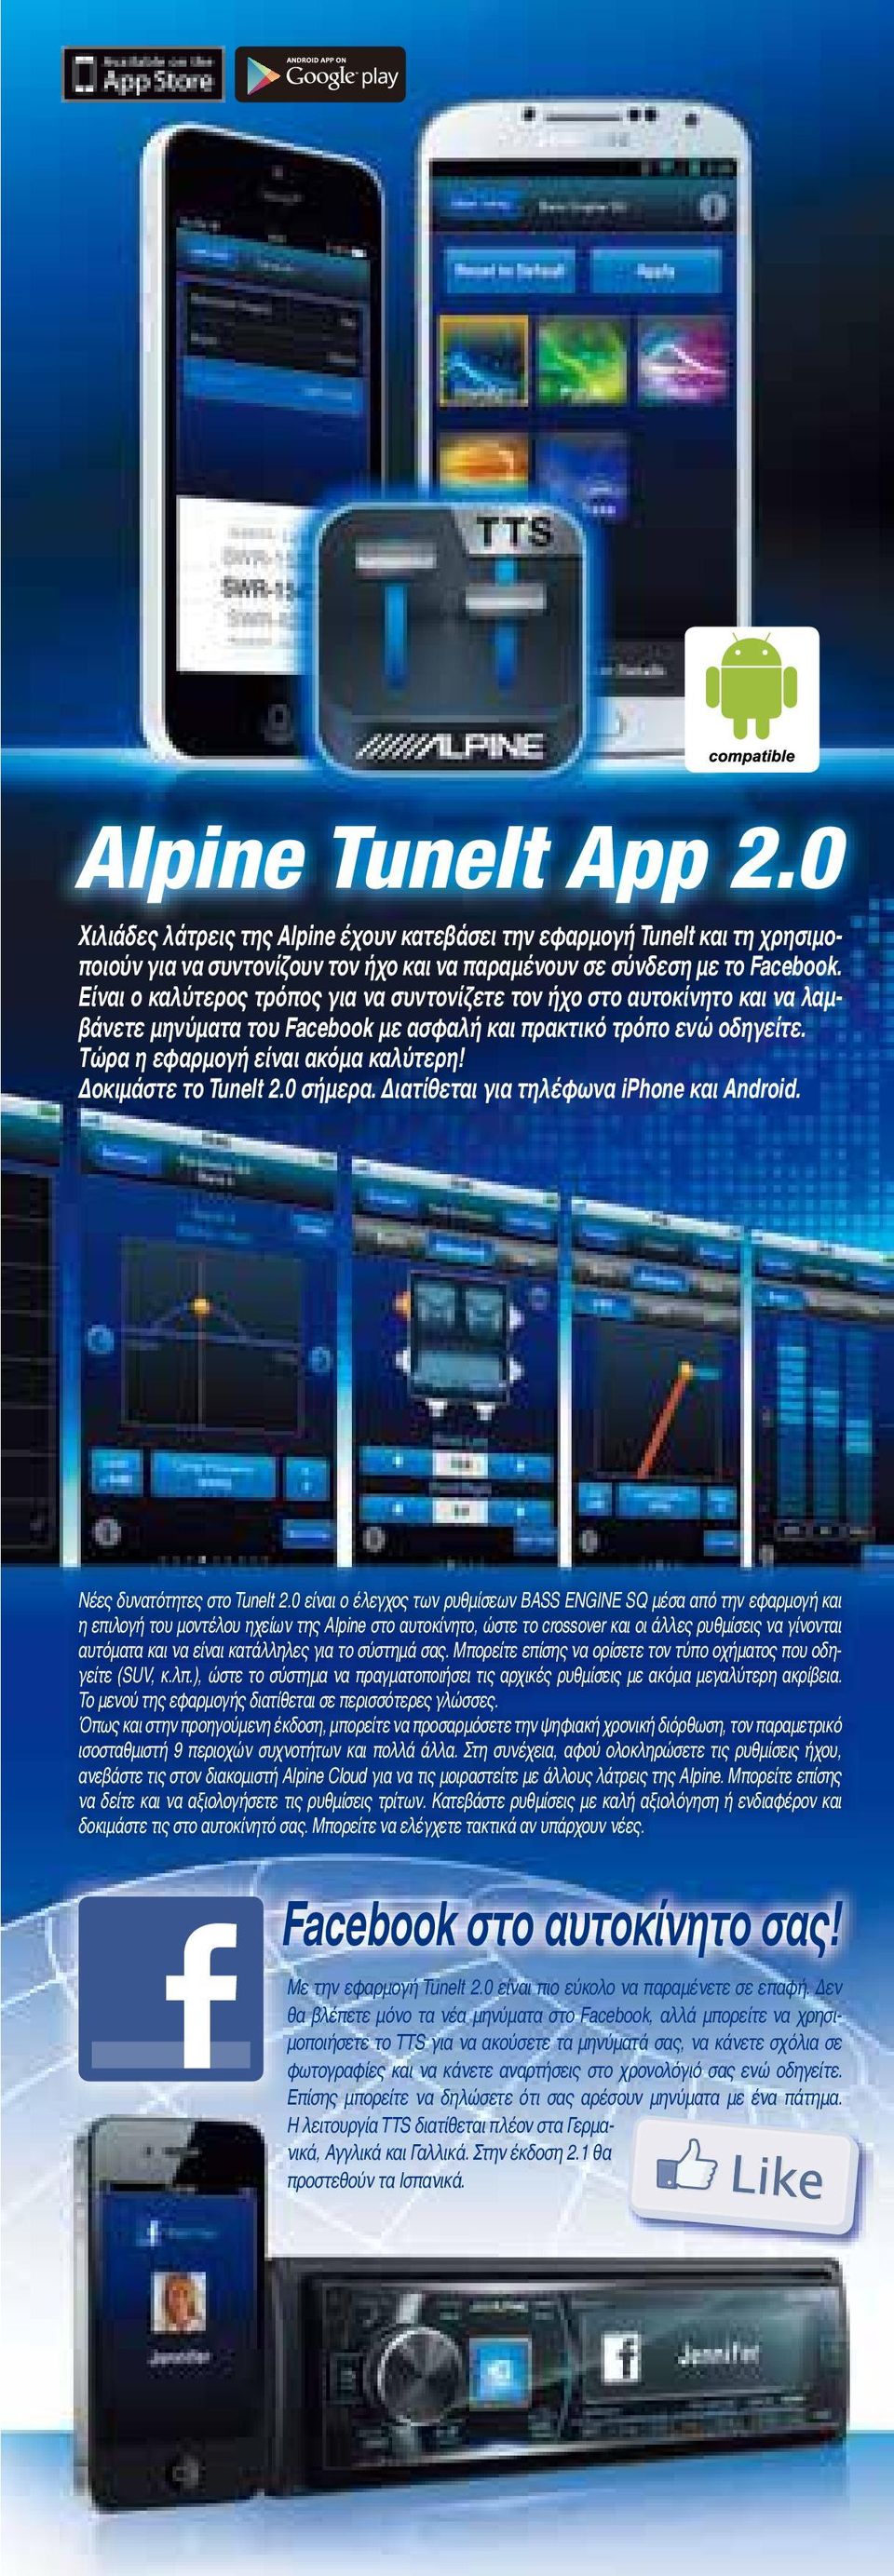 Δοκιμάστε το TuneIt 2.0 σήμερα. Διατίθεται για τηλέφωνα iphone και Android. Νέες δυνατότητες στο TuneIt 2.